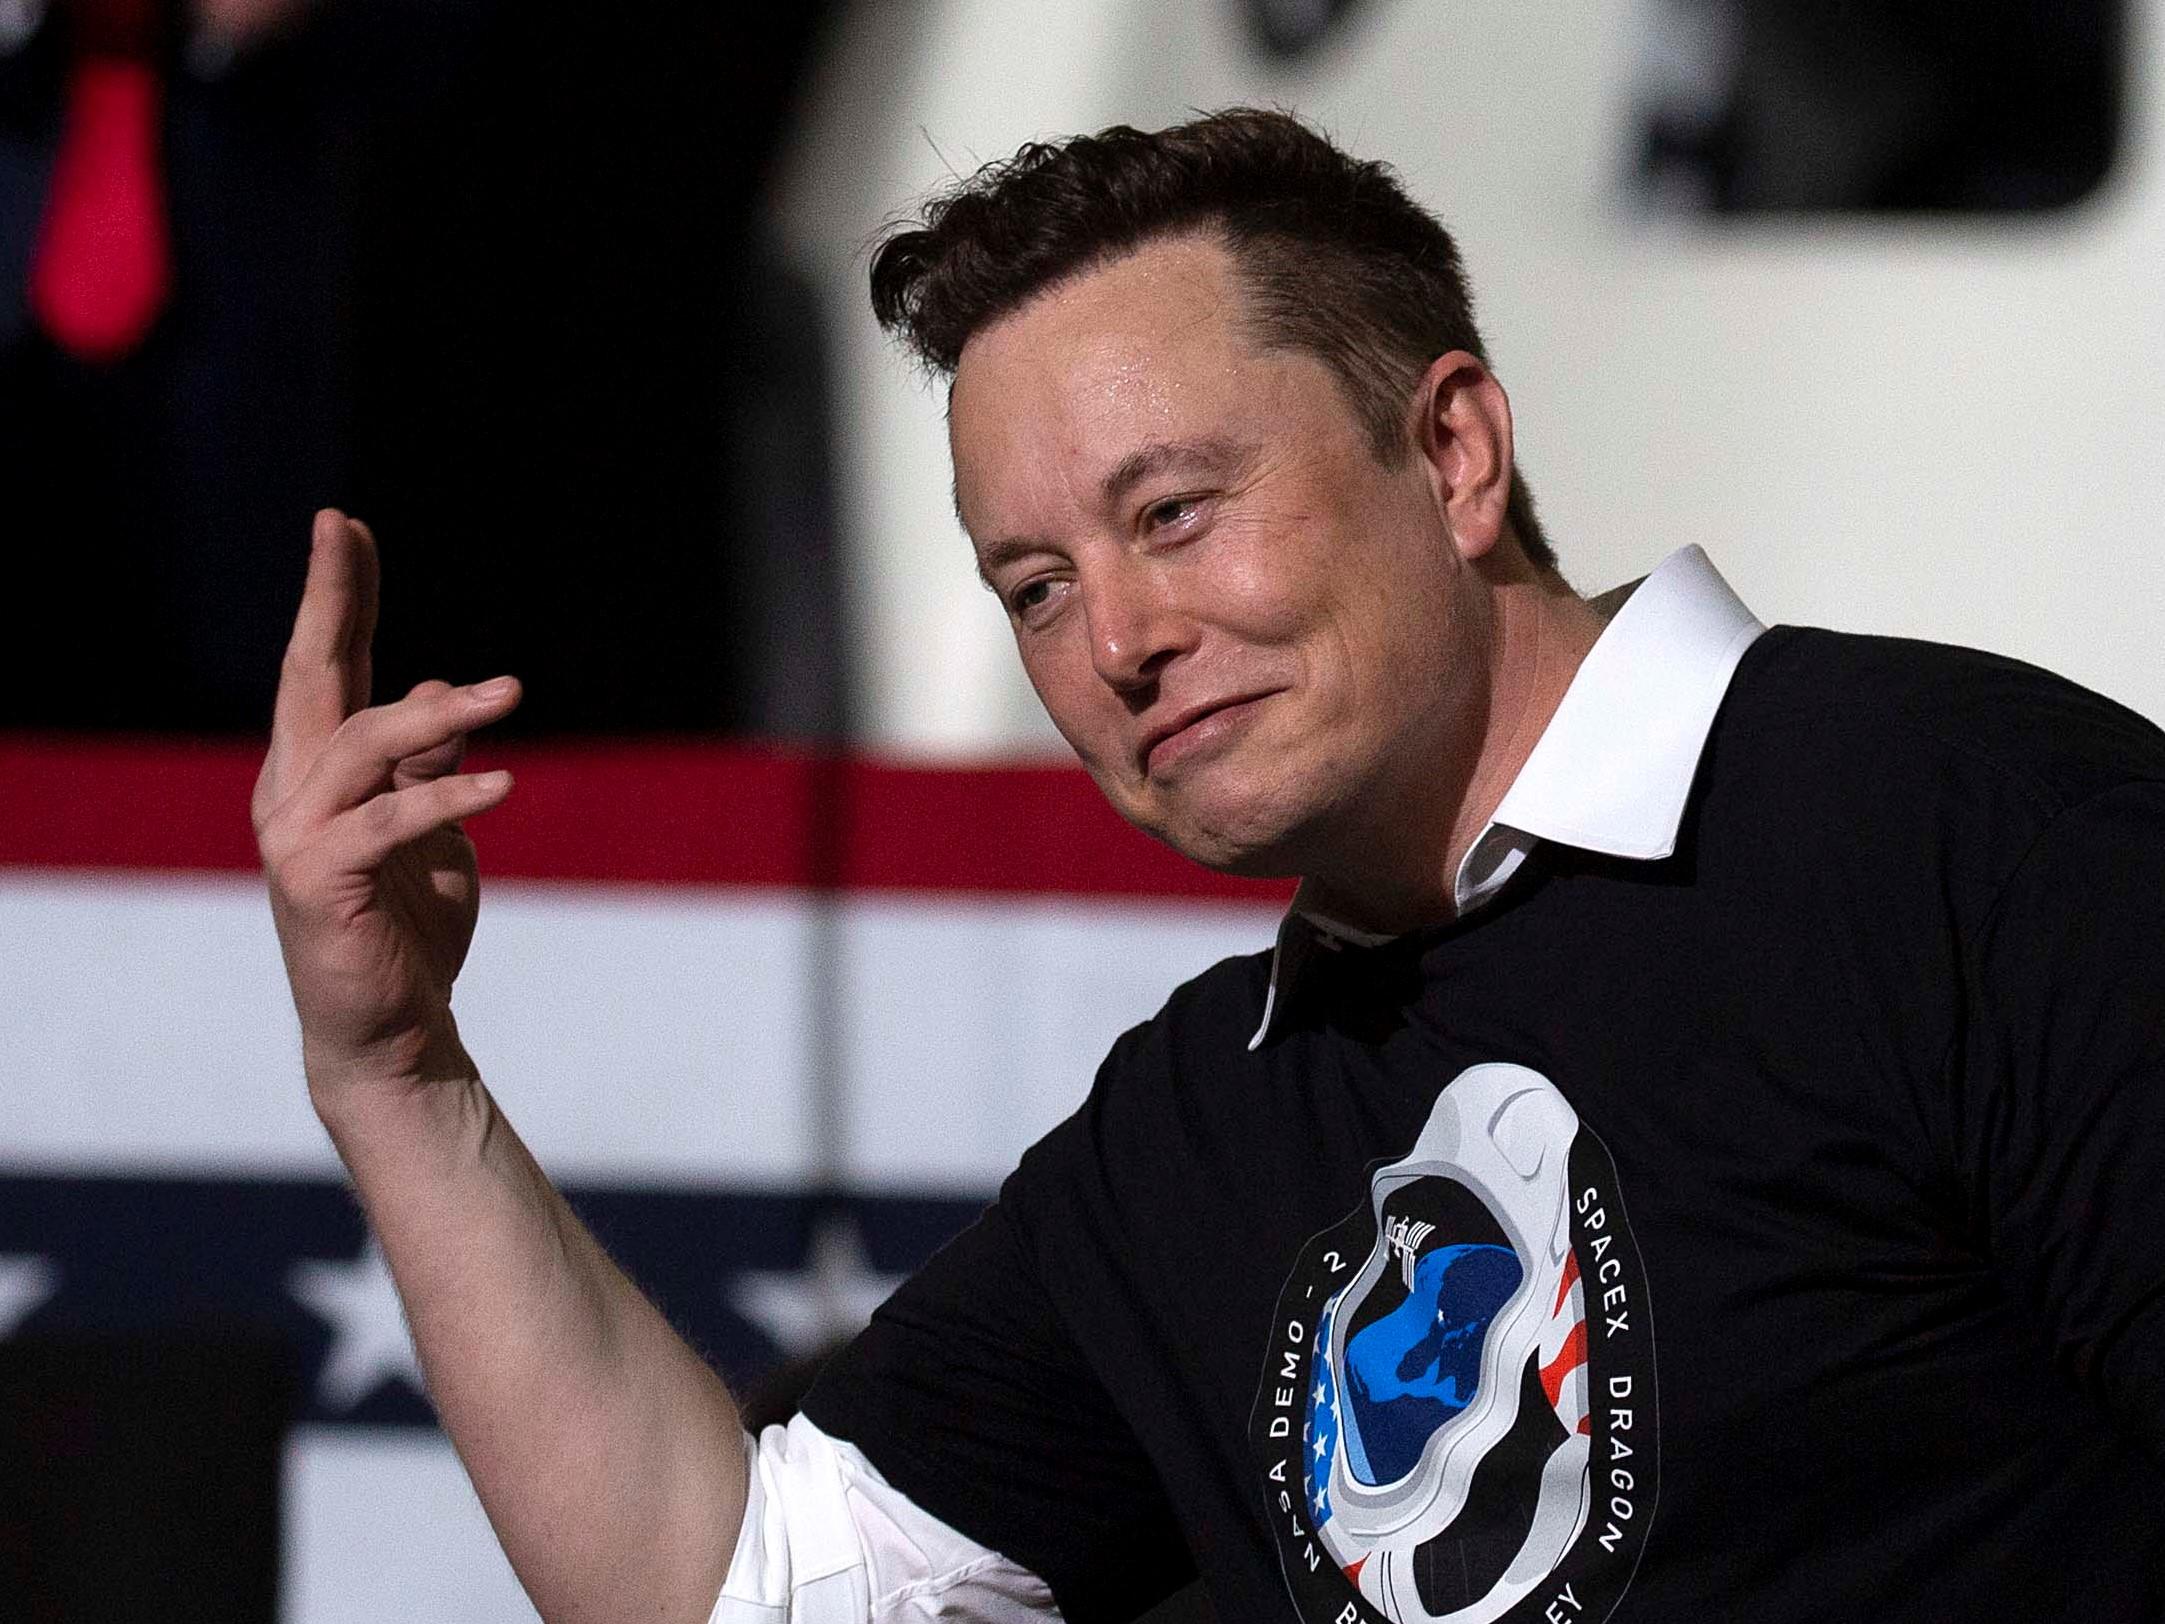 El jefe de SpaceX, Elon Musk, se convirtió en la tercera persona más rica del mundo después cuadriplicar su riqueza en ocho meses